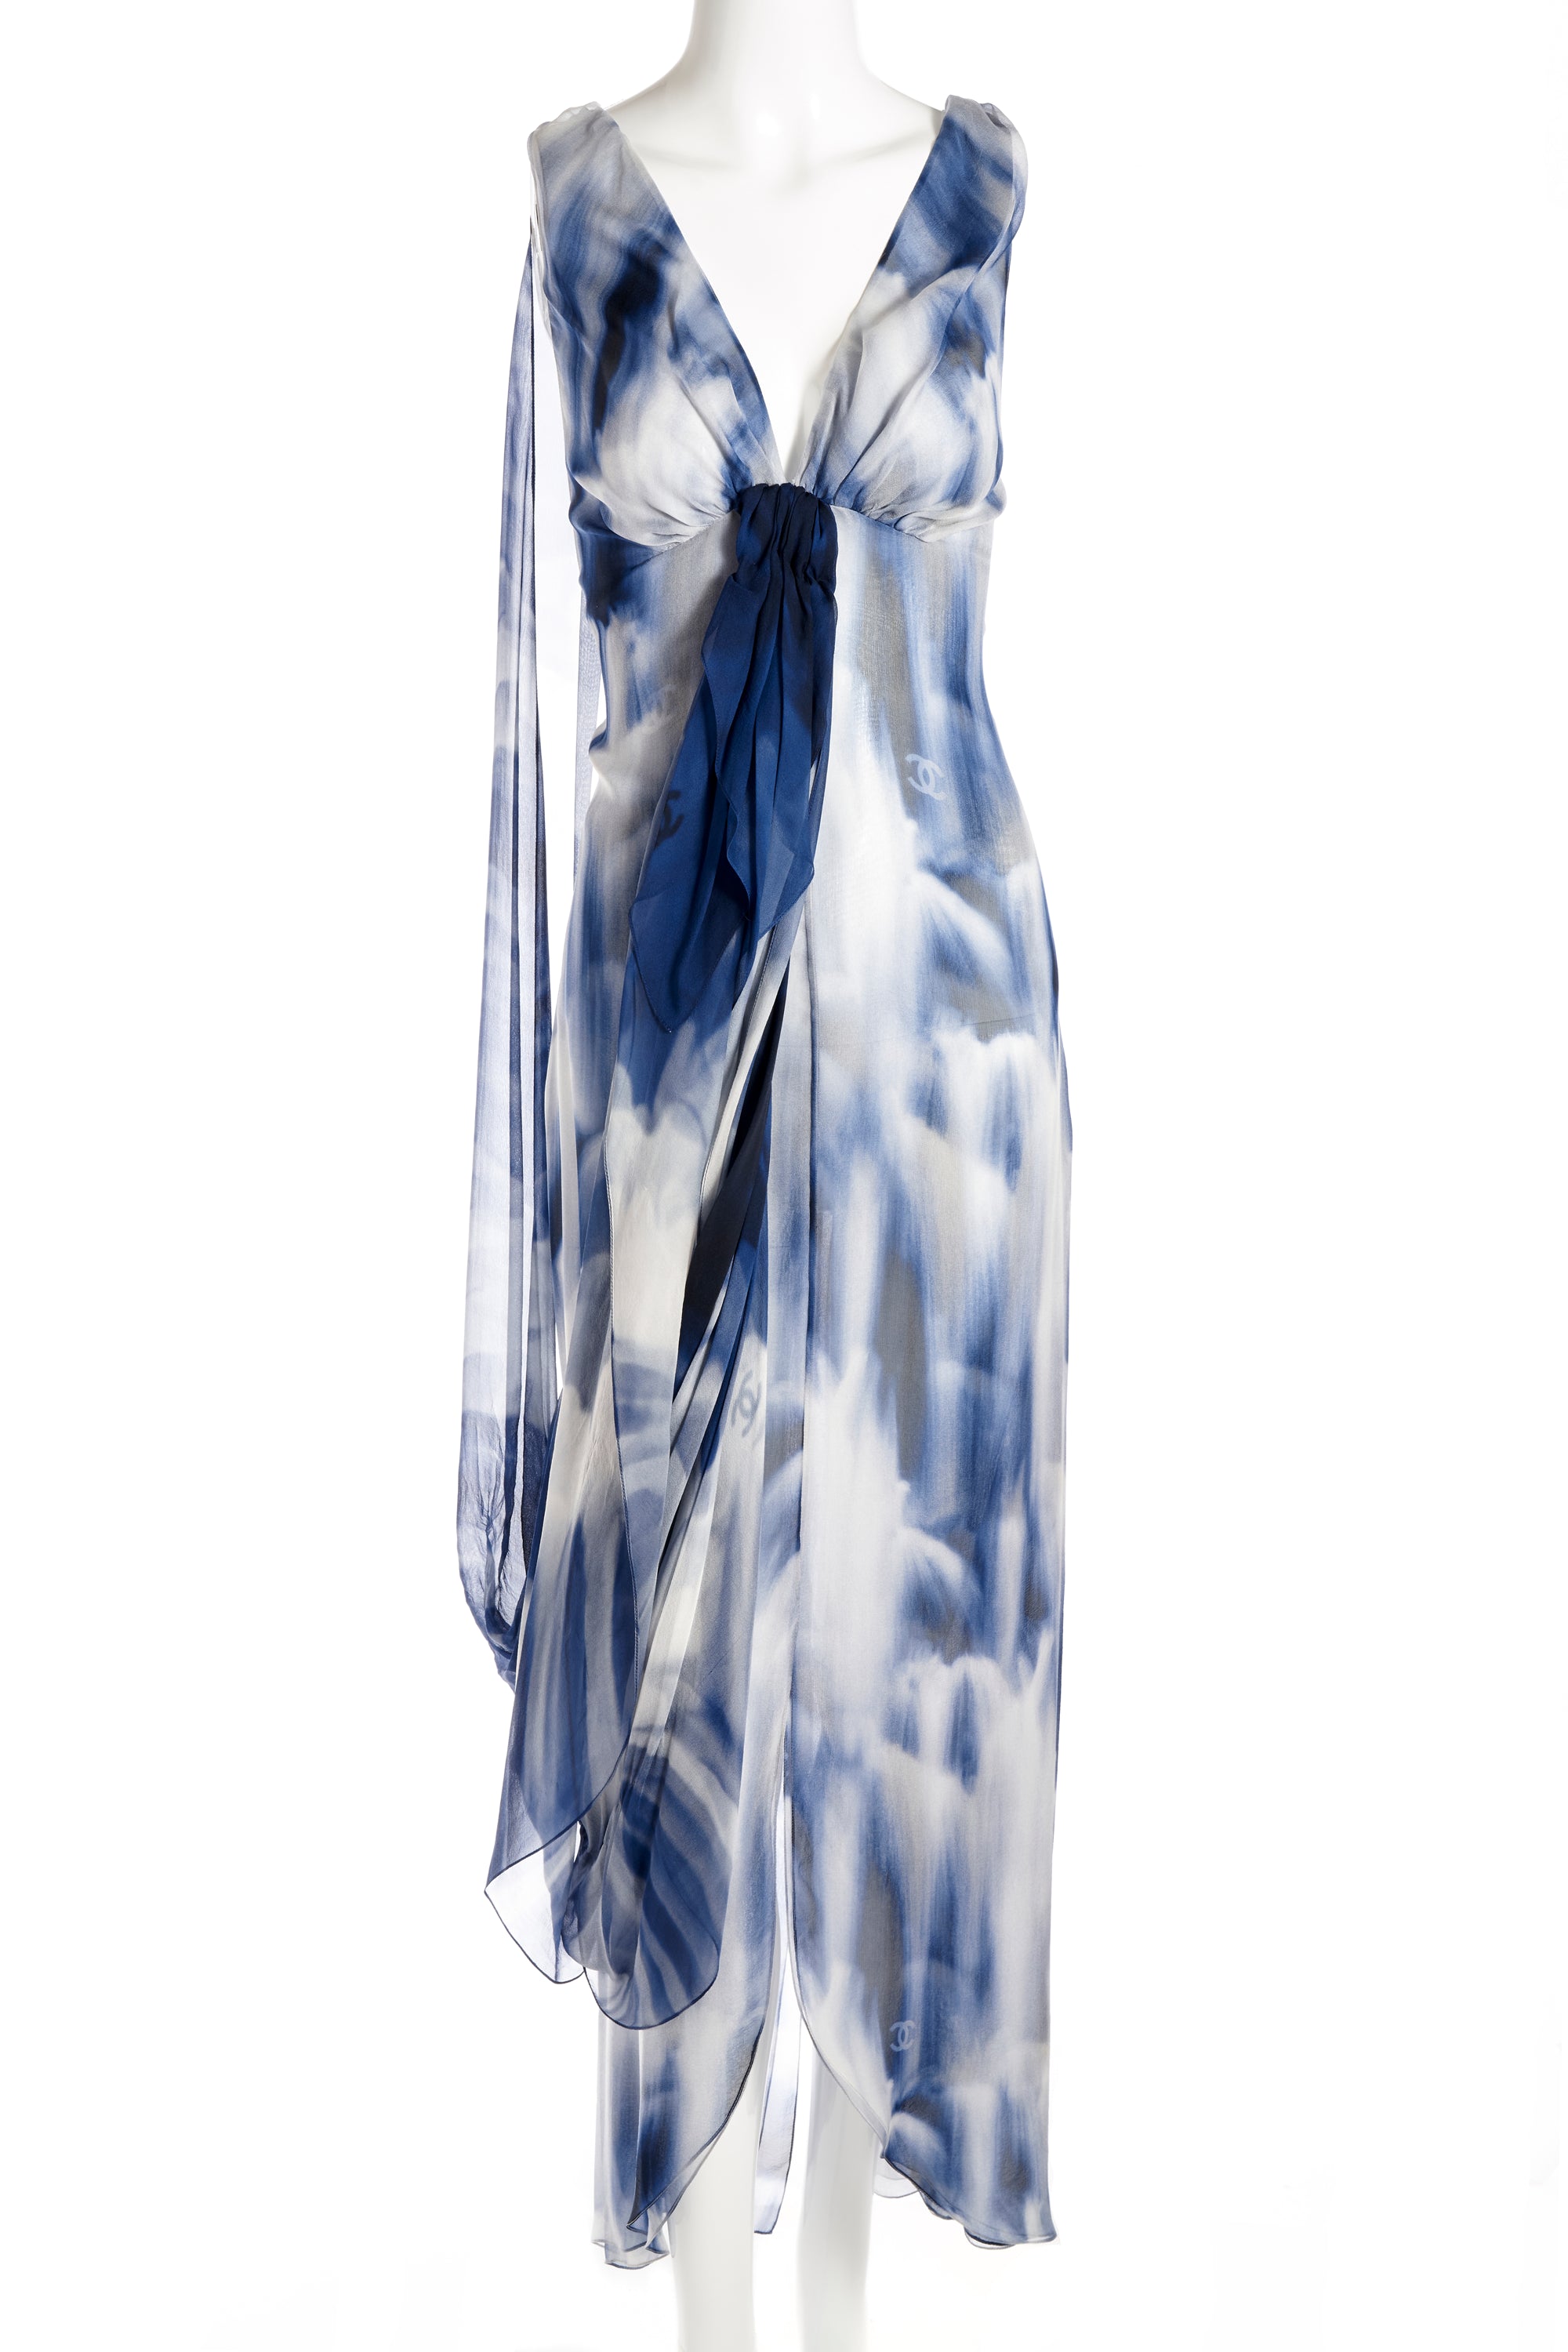 Chanel Blue and White Silk Chiffon Dress 2020